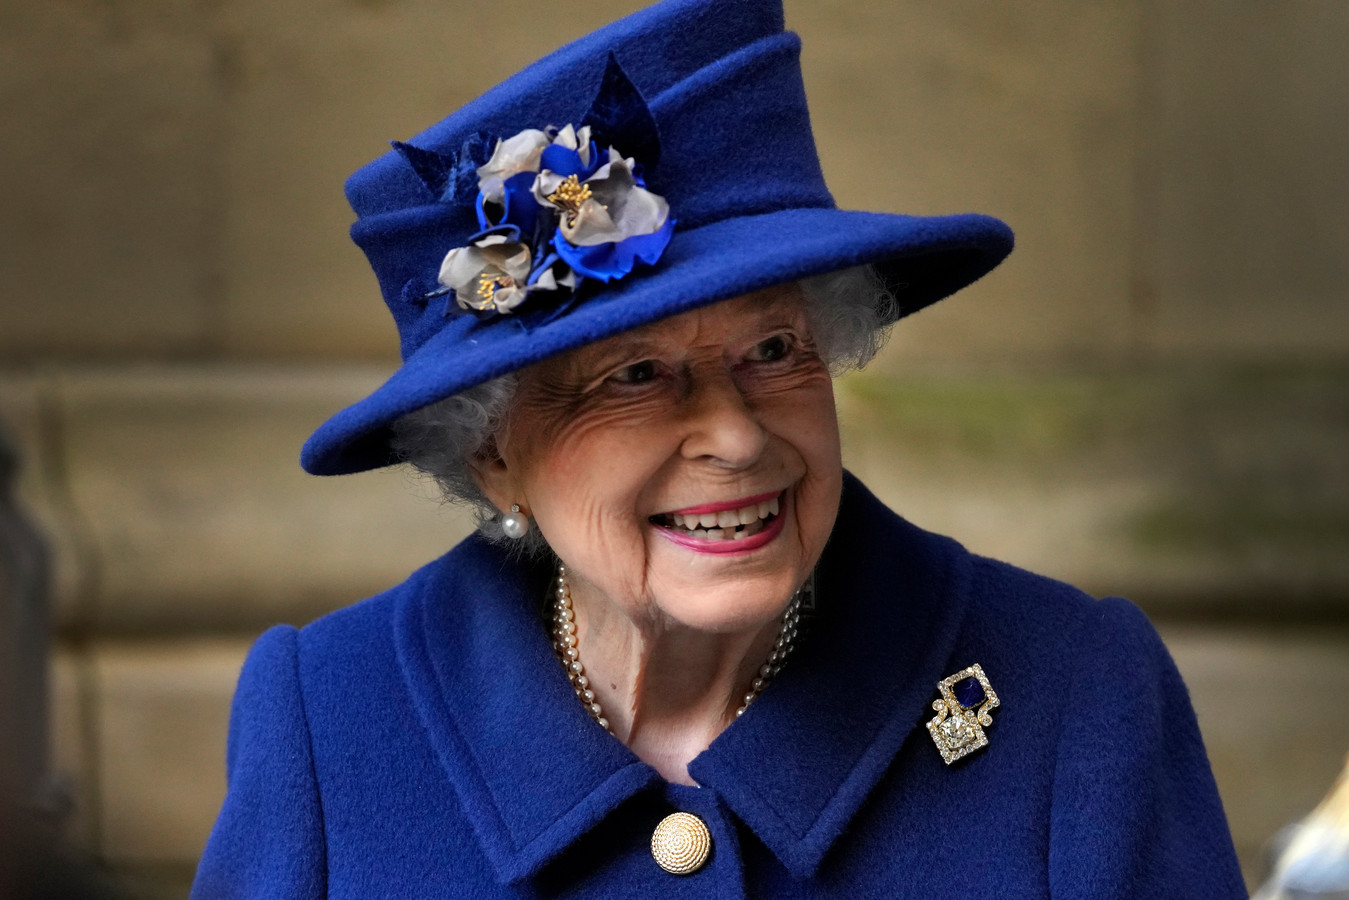 Koningin Elizabeth is 95 en zit volgend jaar 70 jaar op de Britse troon.